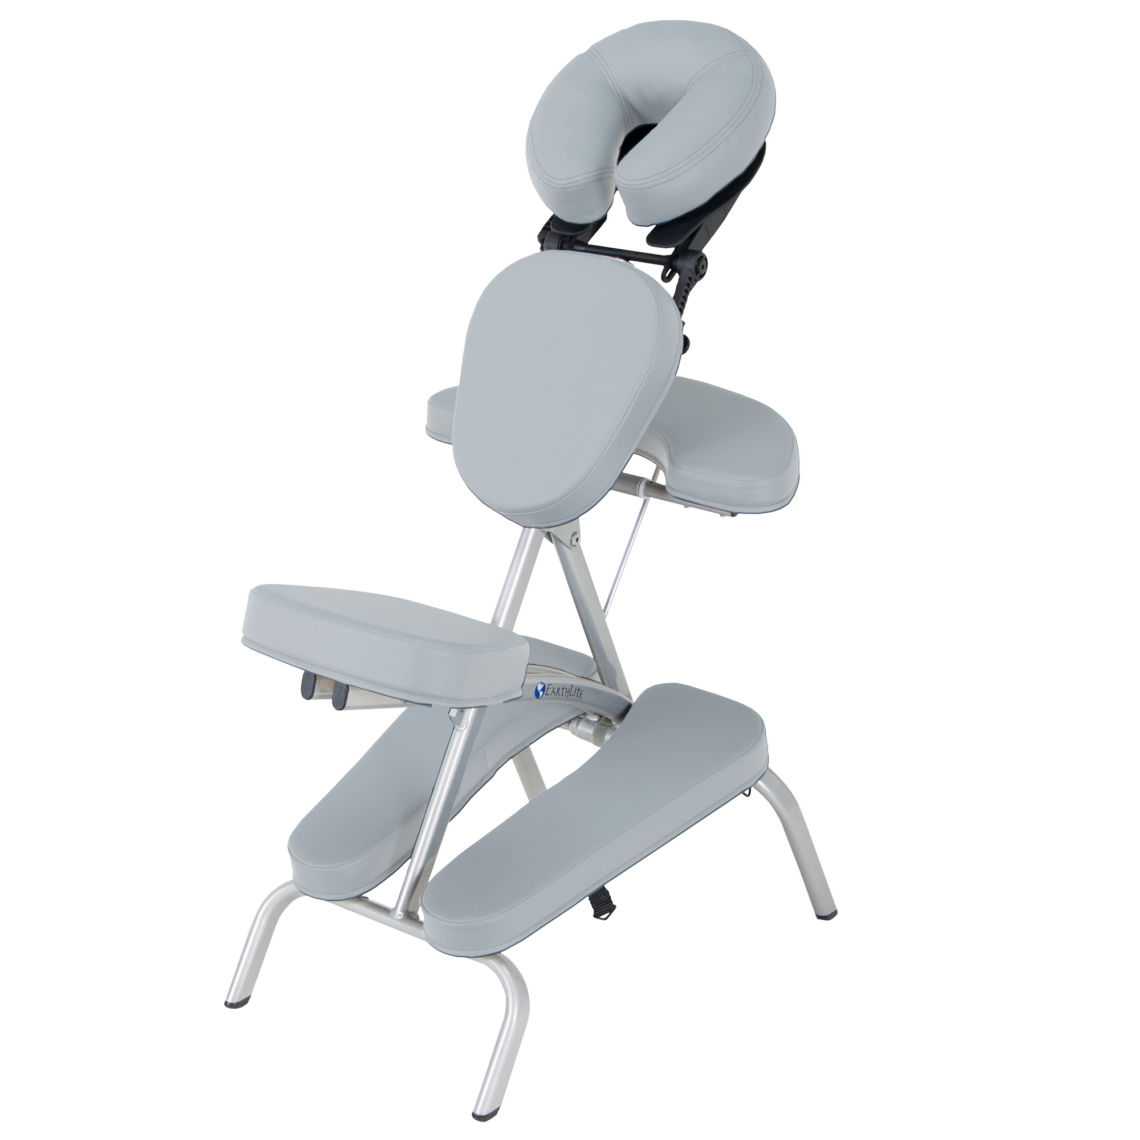 Spavision | VORTEX™ Portable Massage Chair Package